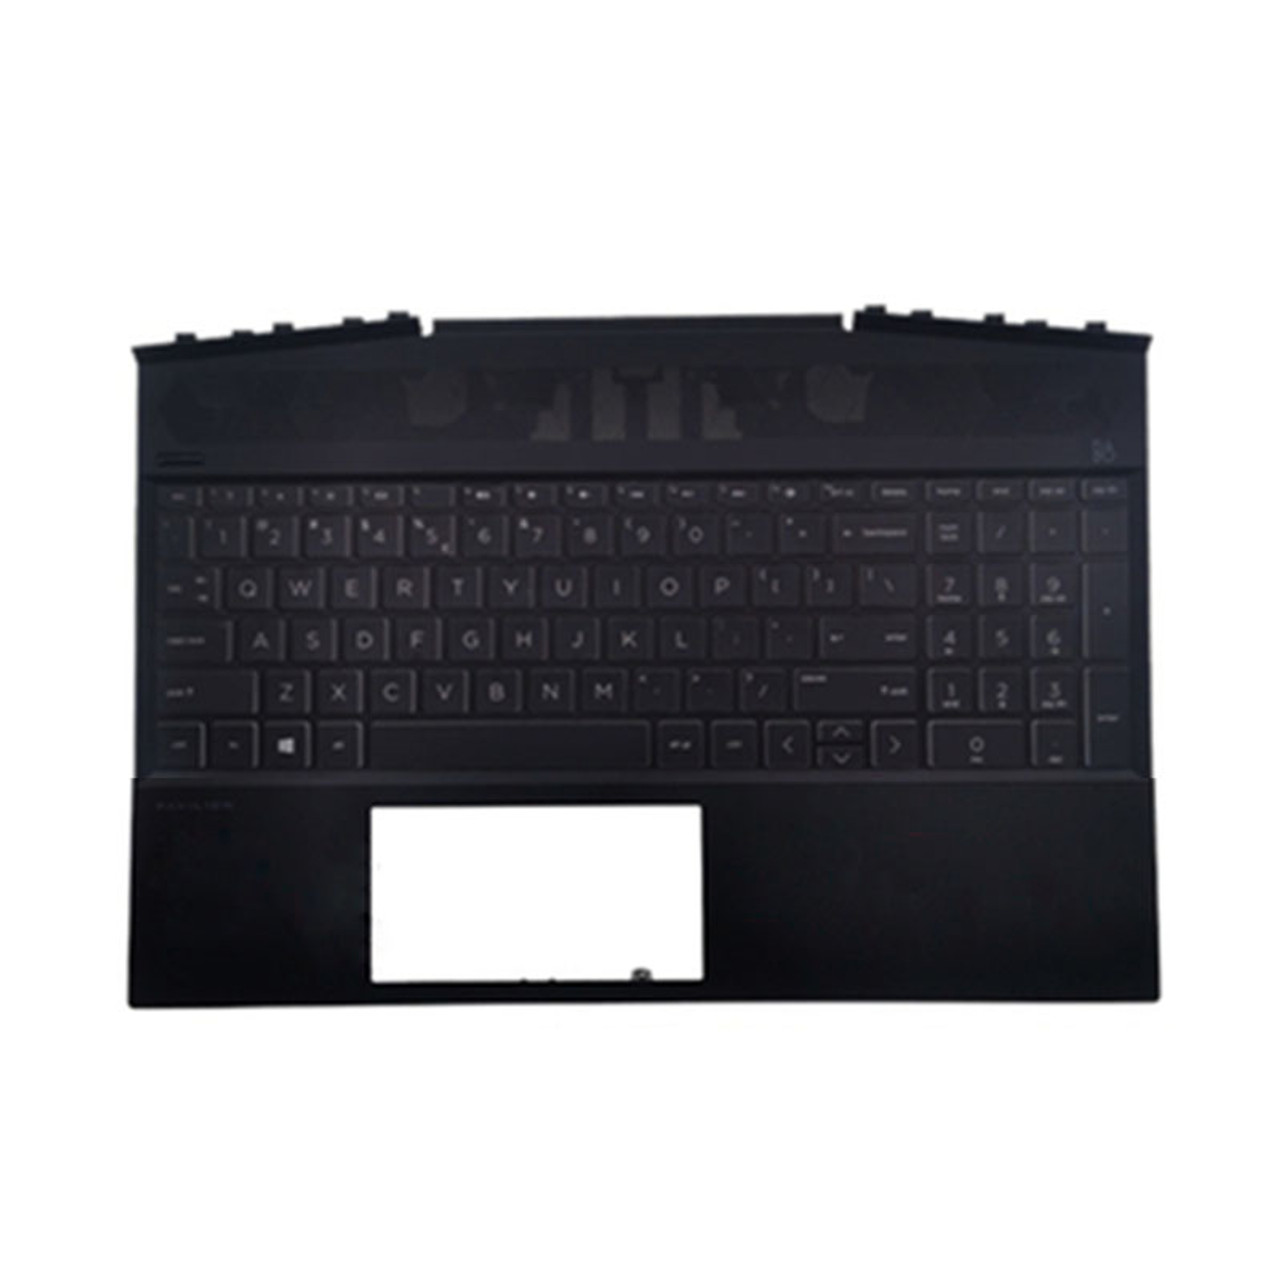 Laptop PalmRest&keyboard For HP Pavilion 15-DK0000 L57595-001 Black Upper  Case United States US keyboard With White Backlit